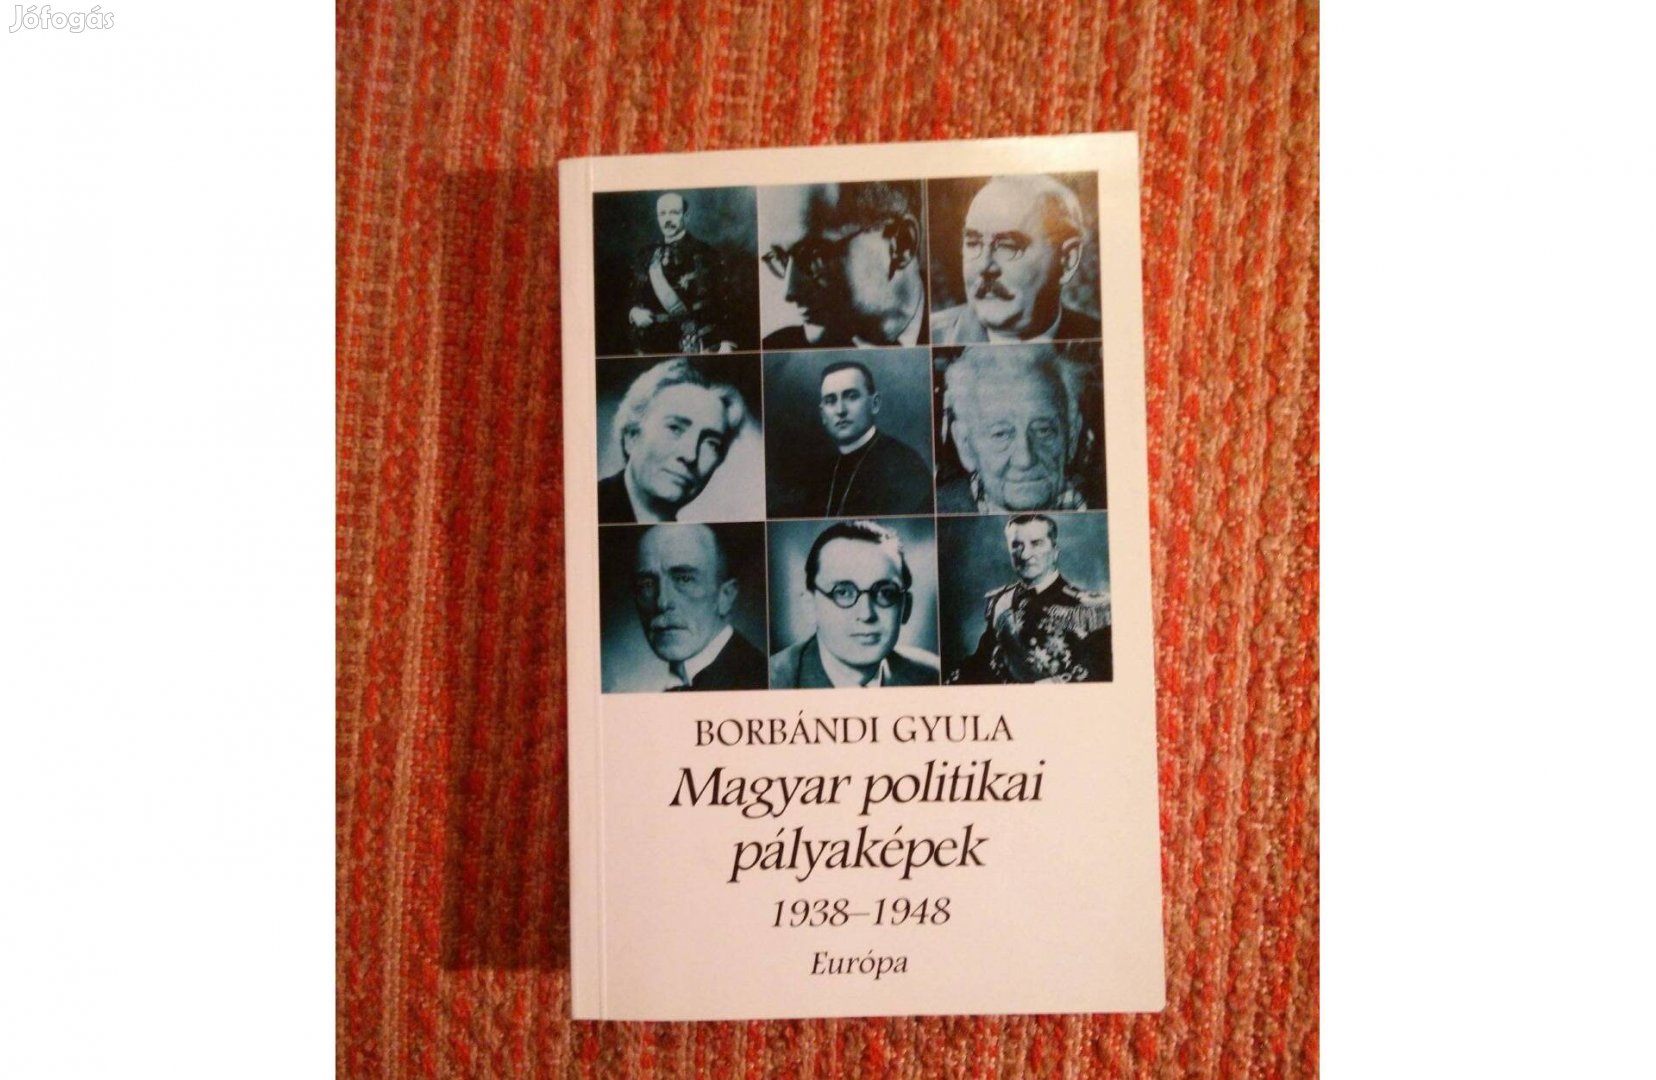 Borbándi Gyula: Magyar politikai pályaképek 1938-1948 könyv